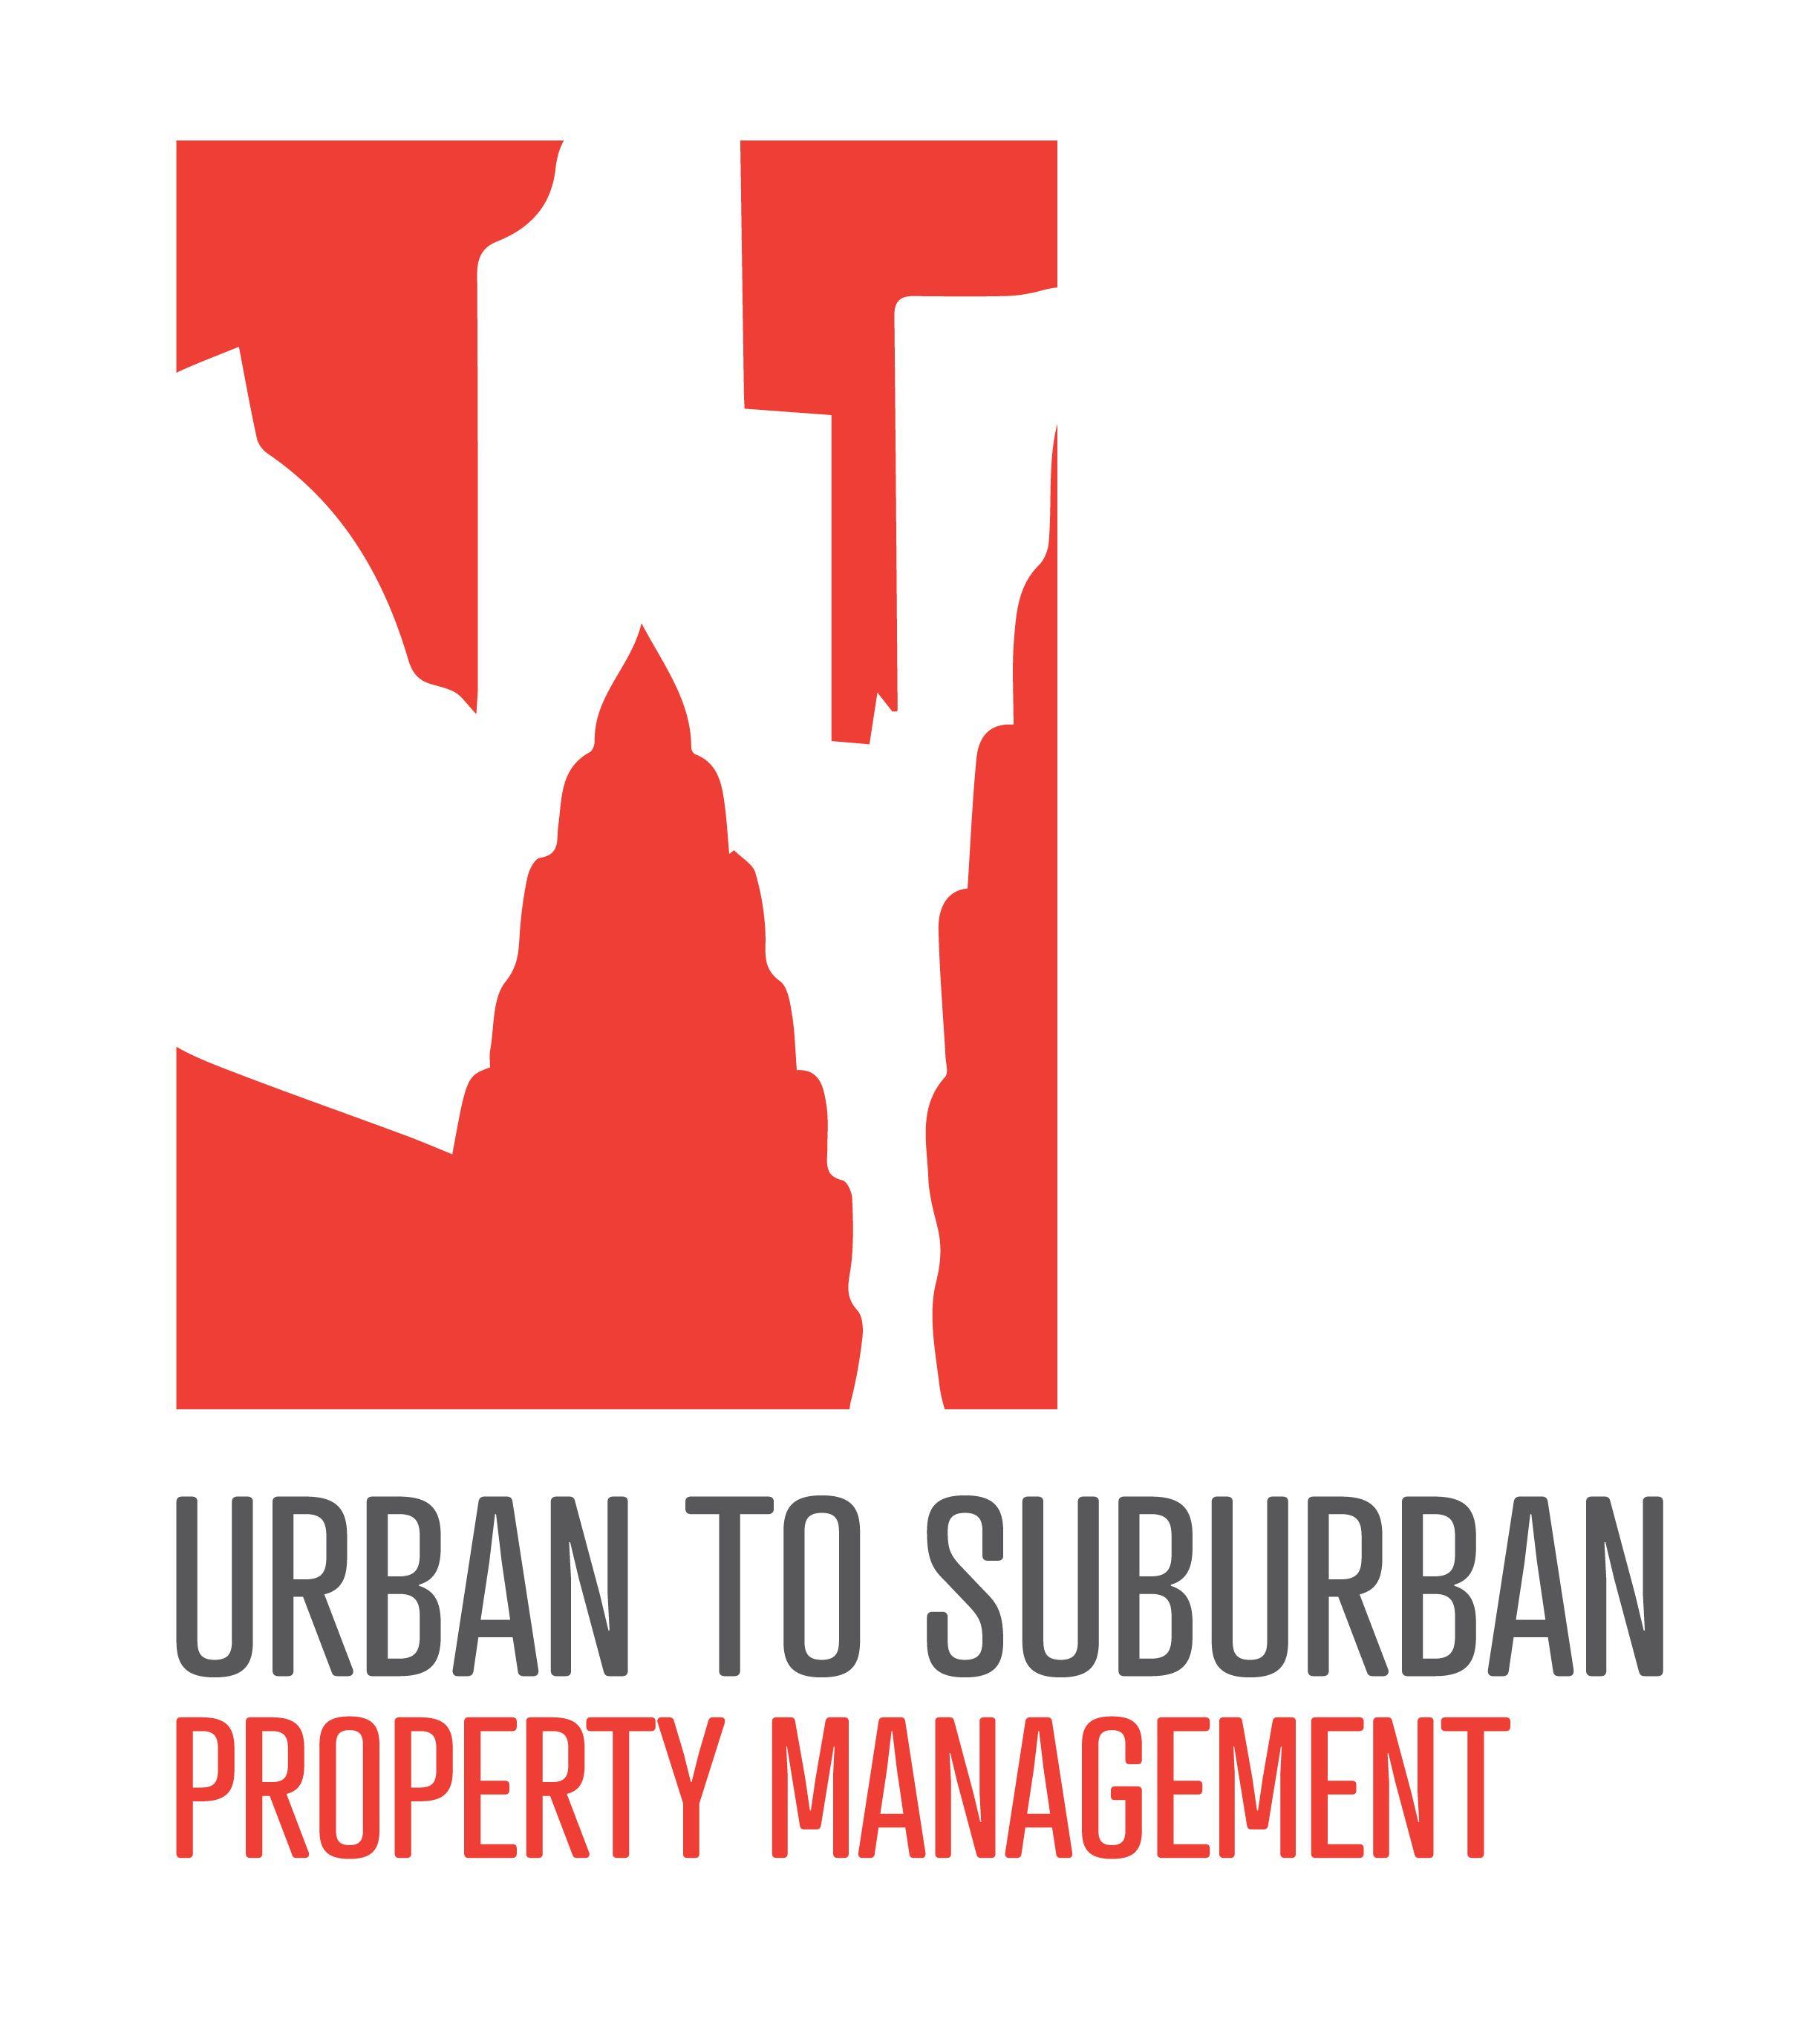 Suberban Logo - URBAN TO SUBURBAN: LOGO DESIGN